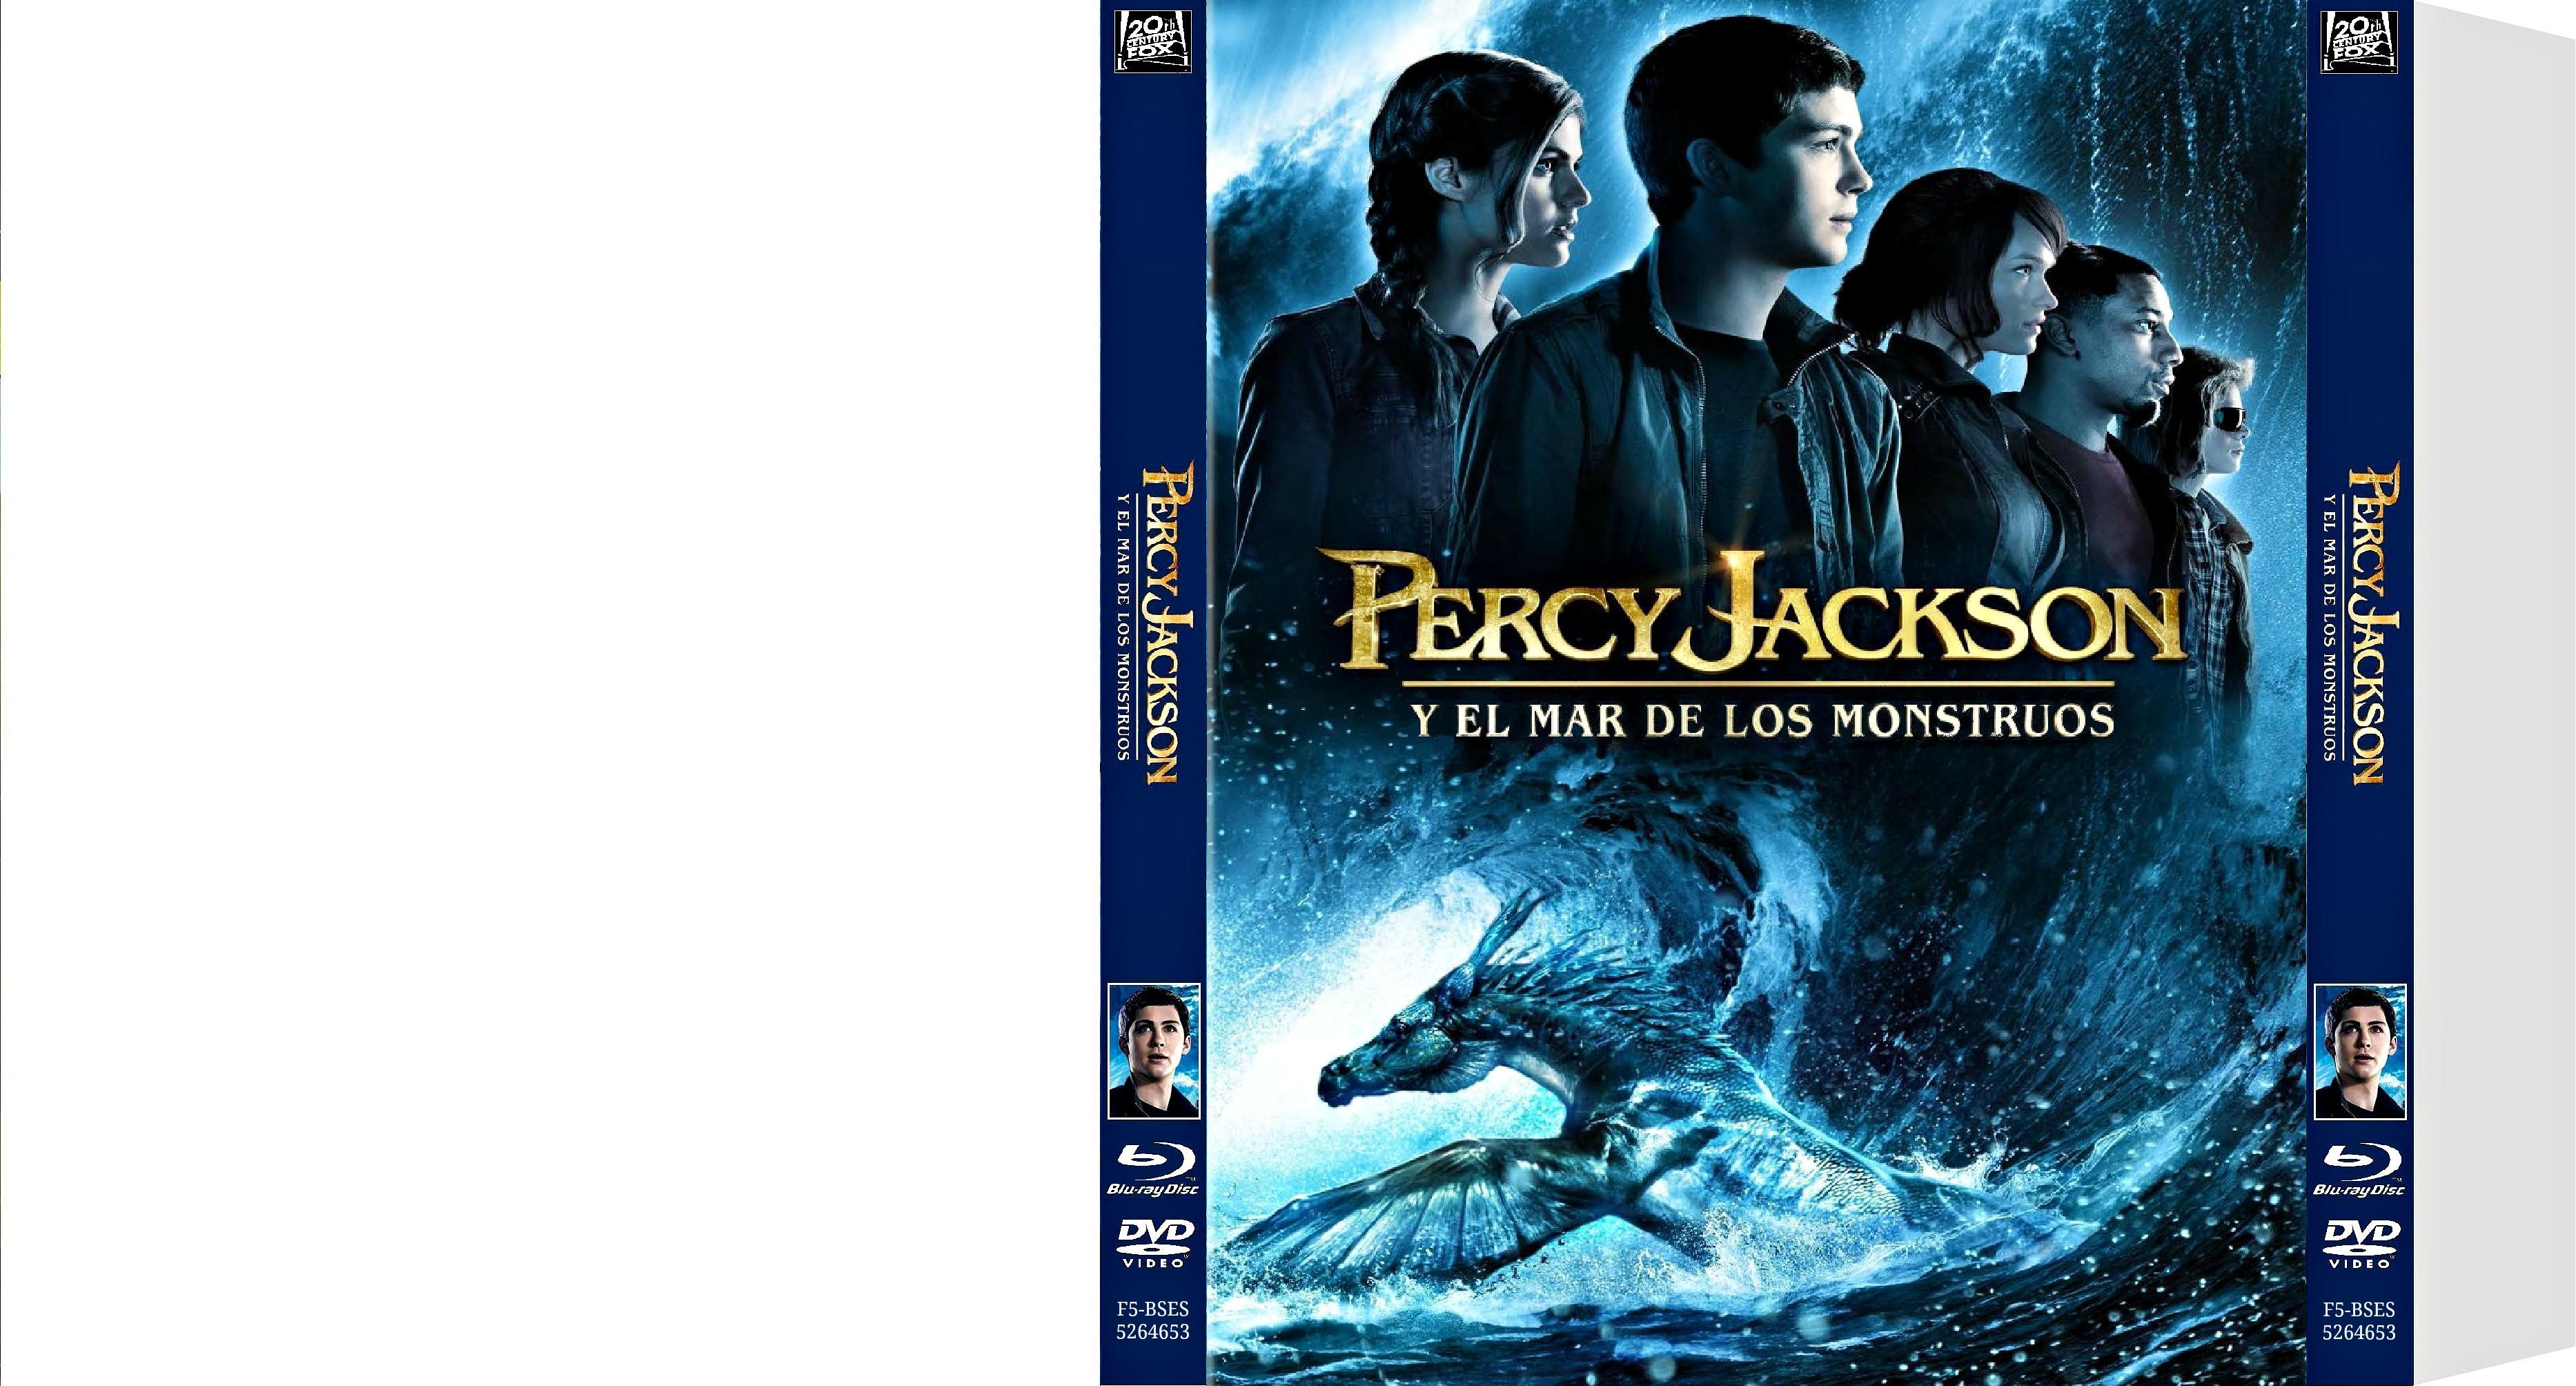 Slipcover de Percy Jackson y el mar de los monstruos - Percy Jackson Y El Mar De Los Monstruos